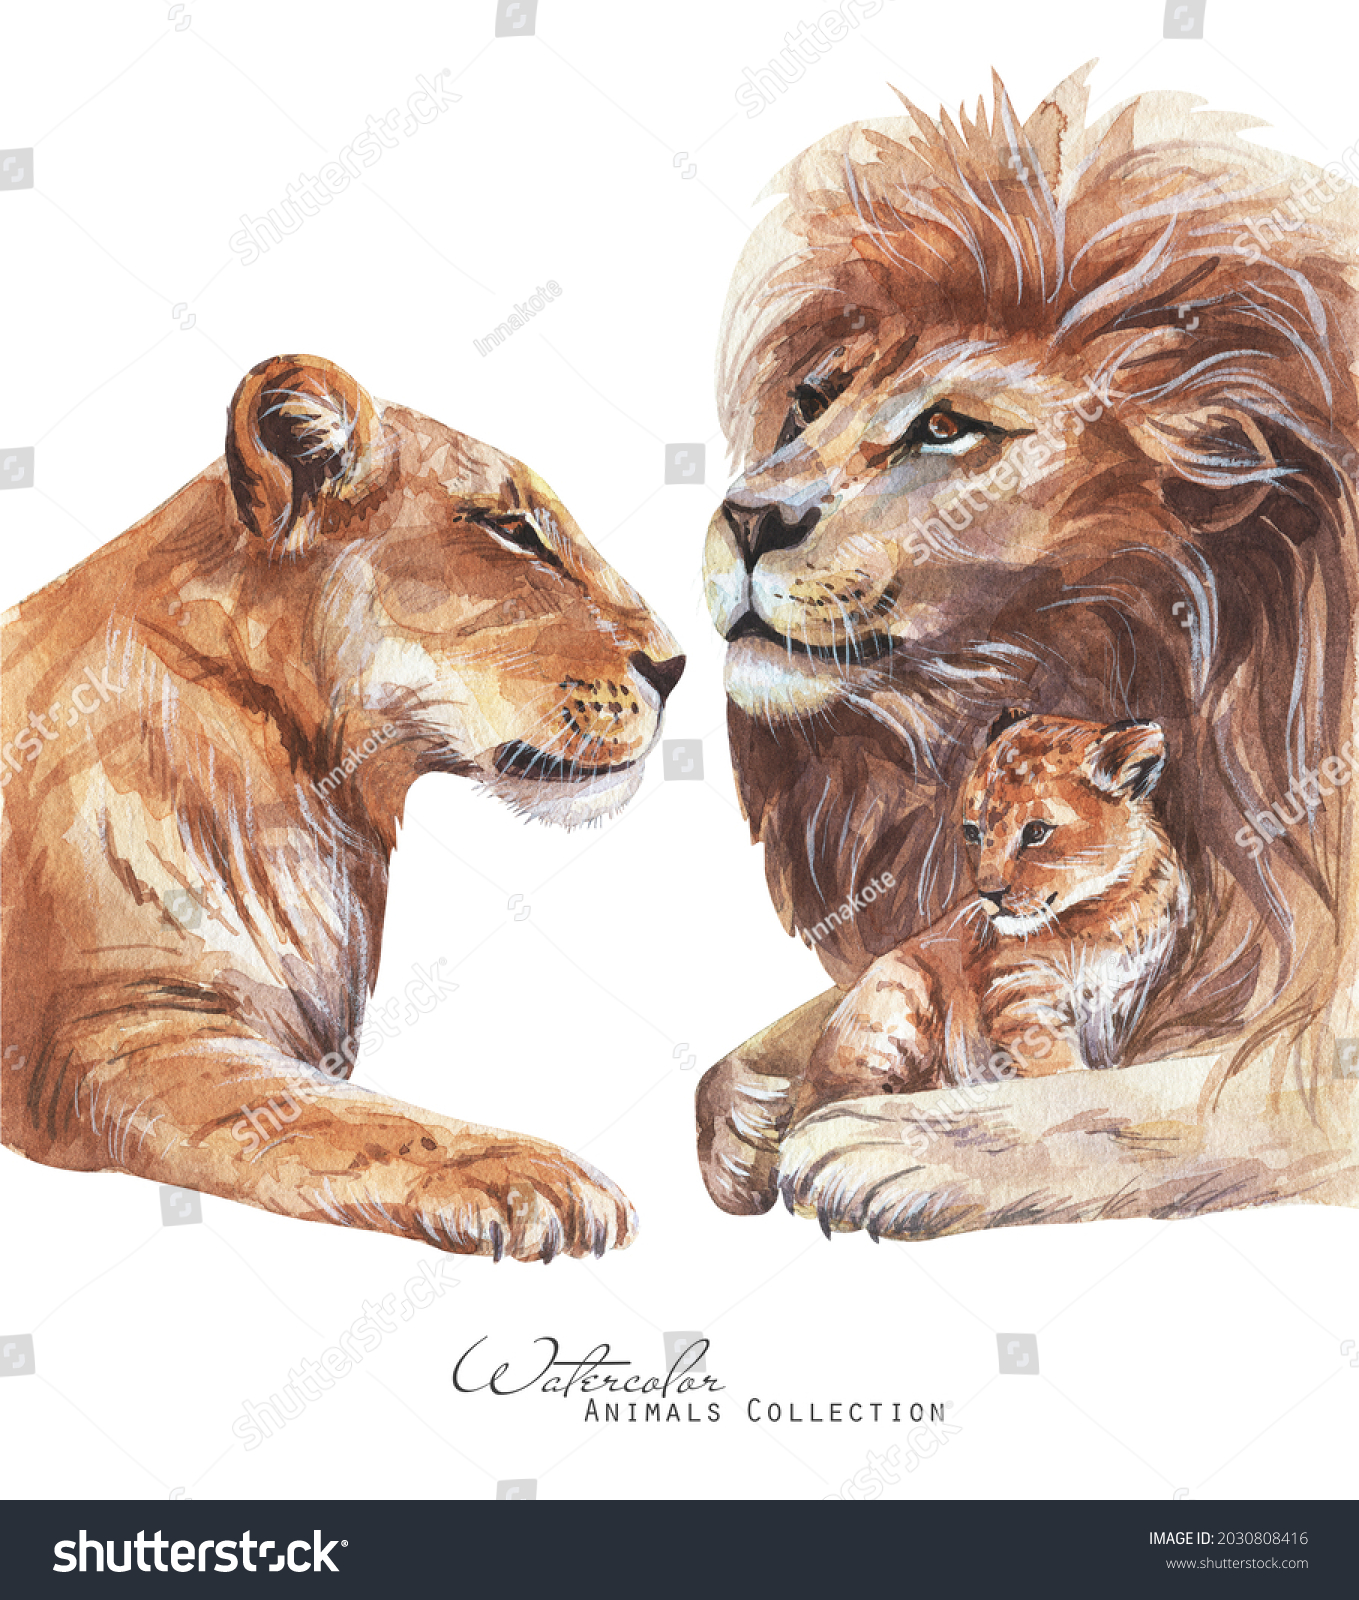 Stock Photo Lions Family Watercolor Illustration Lioness Lion Cub Portrait 2030808416 